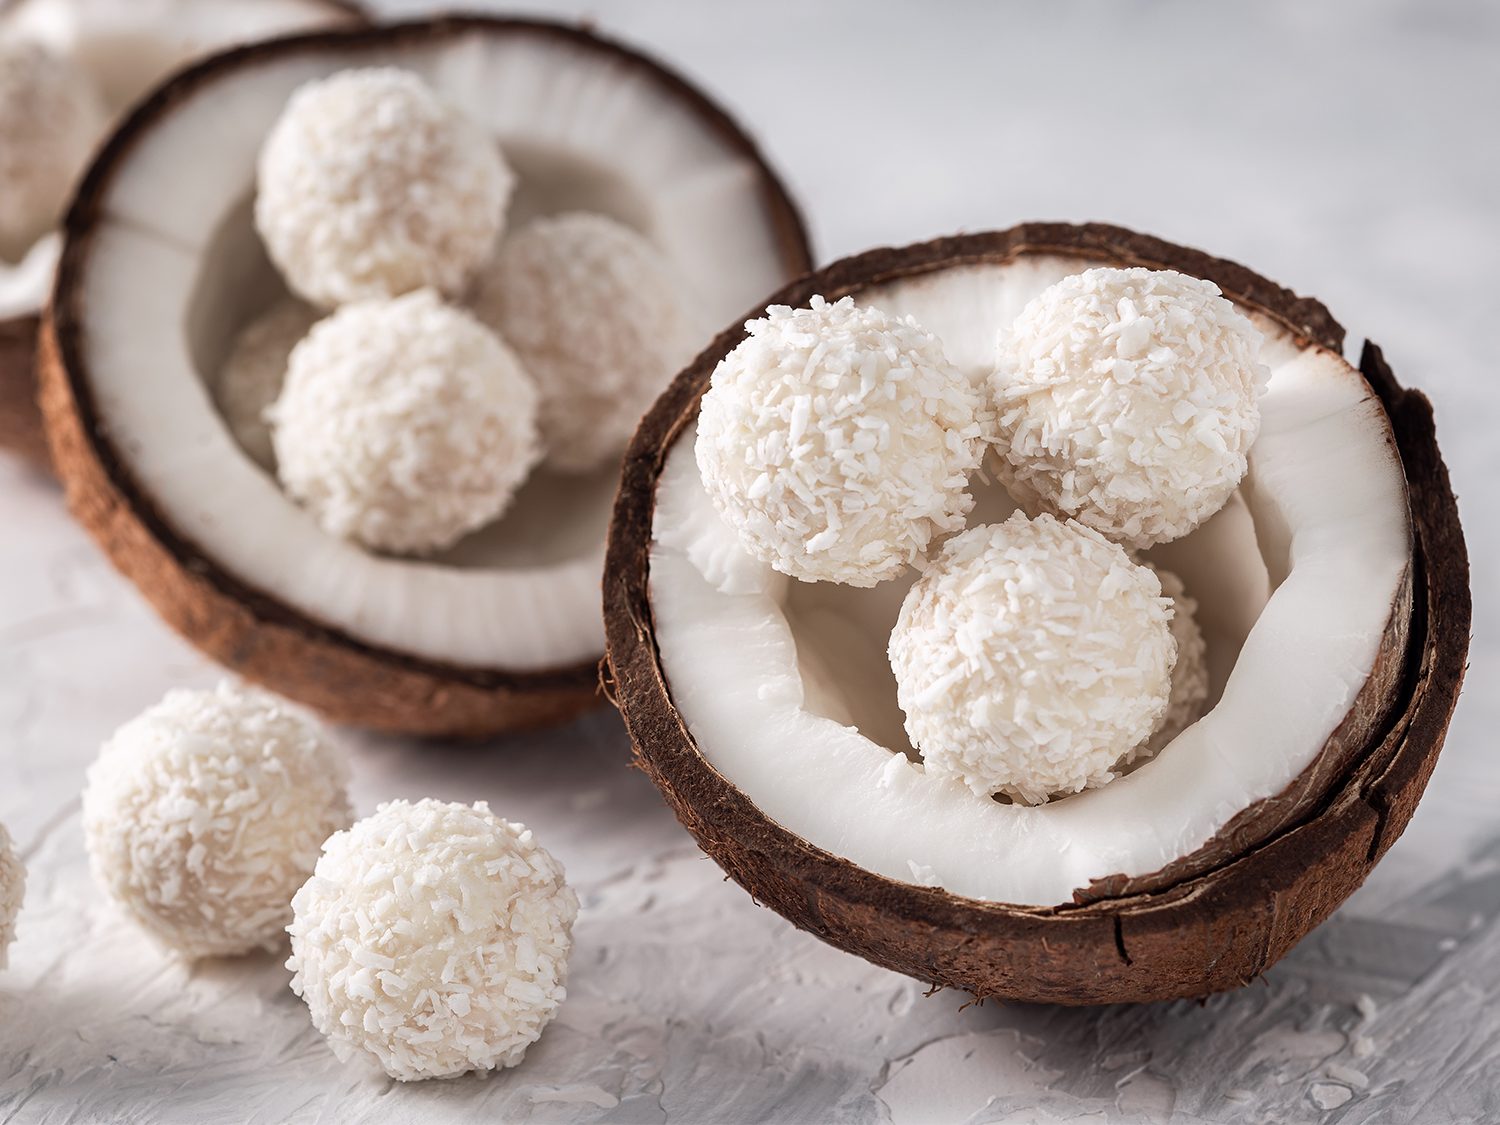 Des boules de coco dans une noix de coco ouverte